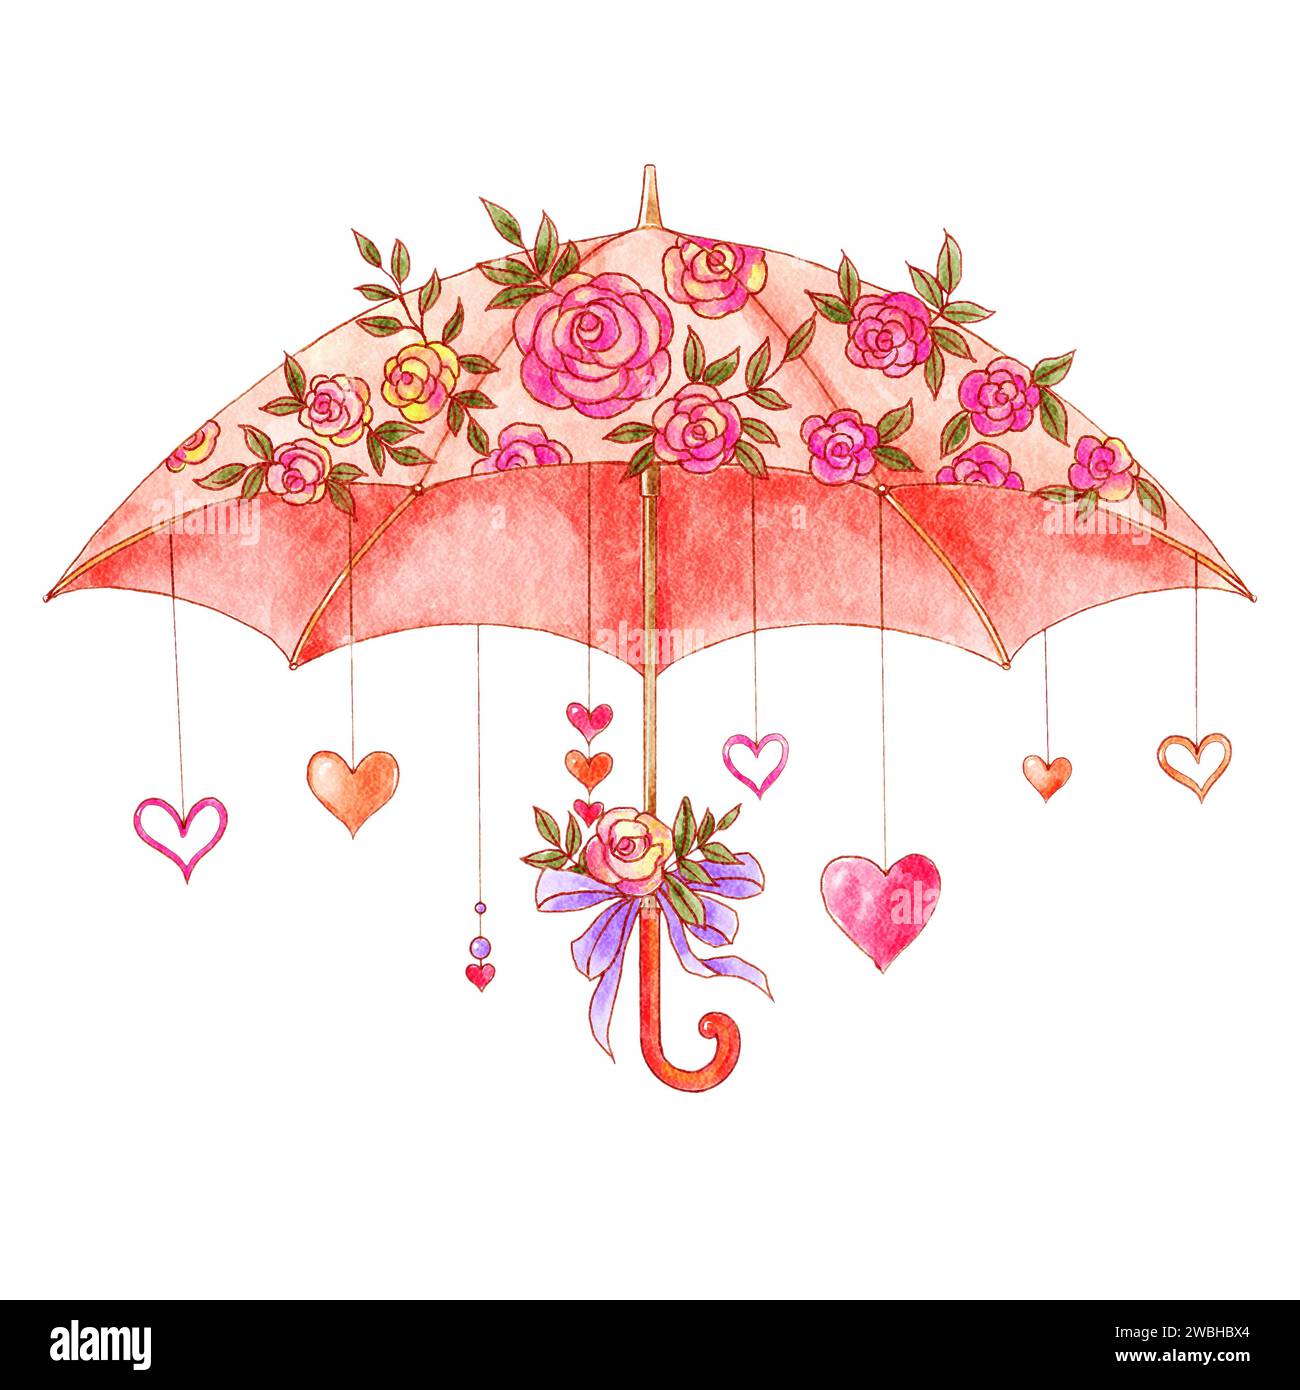 Sonnenschirm mit Rose und Herz dekoriert. Aquarellmalerei. Valentinstag-Konzept. Isolierter weißer Hintergrund. Abbildung . Stockfoto